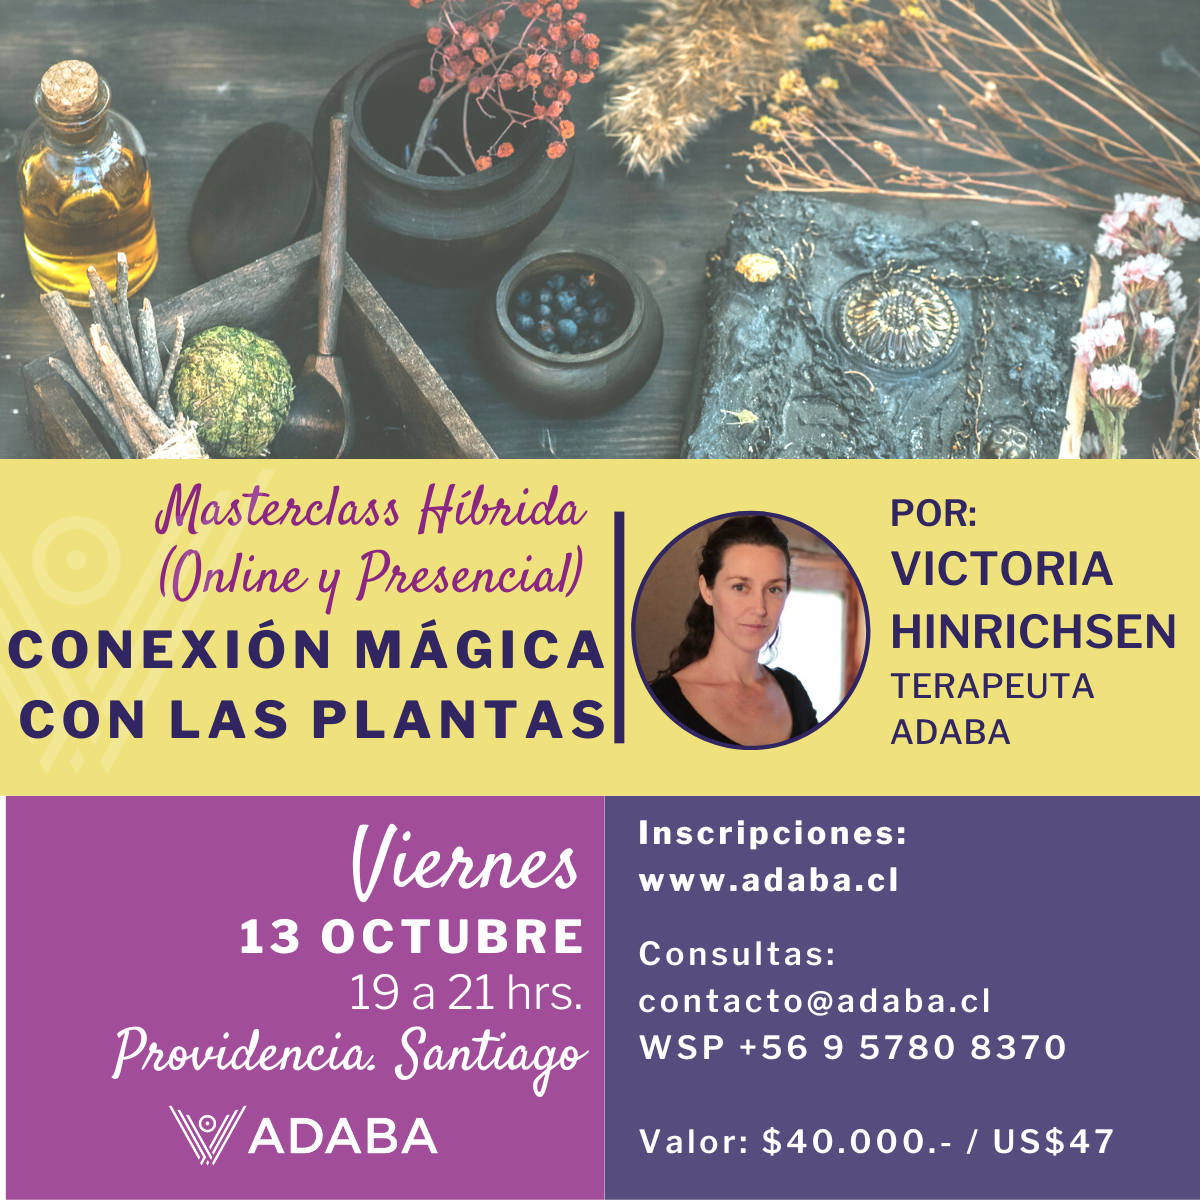 Conexión Mágica con las Plantas 🌿 - Masterclass Híbrida (Presencial y Online) - Viernes 13 Octubre